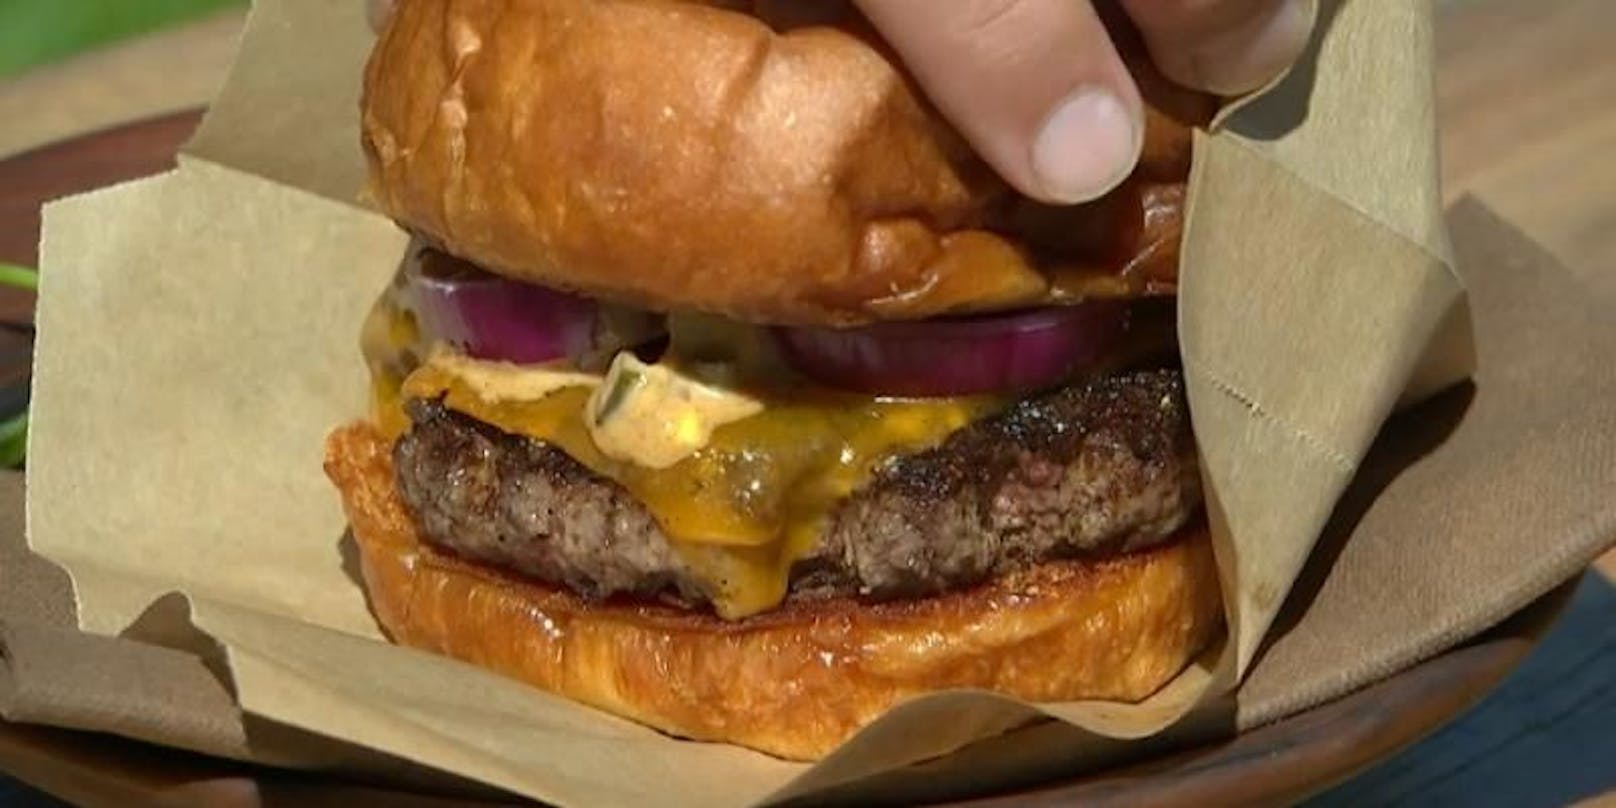 Das Noma wurde vier Mal zum besten Restaurant der Welt gekürt. Sein neuester Burger ist laut Gästen ein Hit.